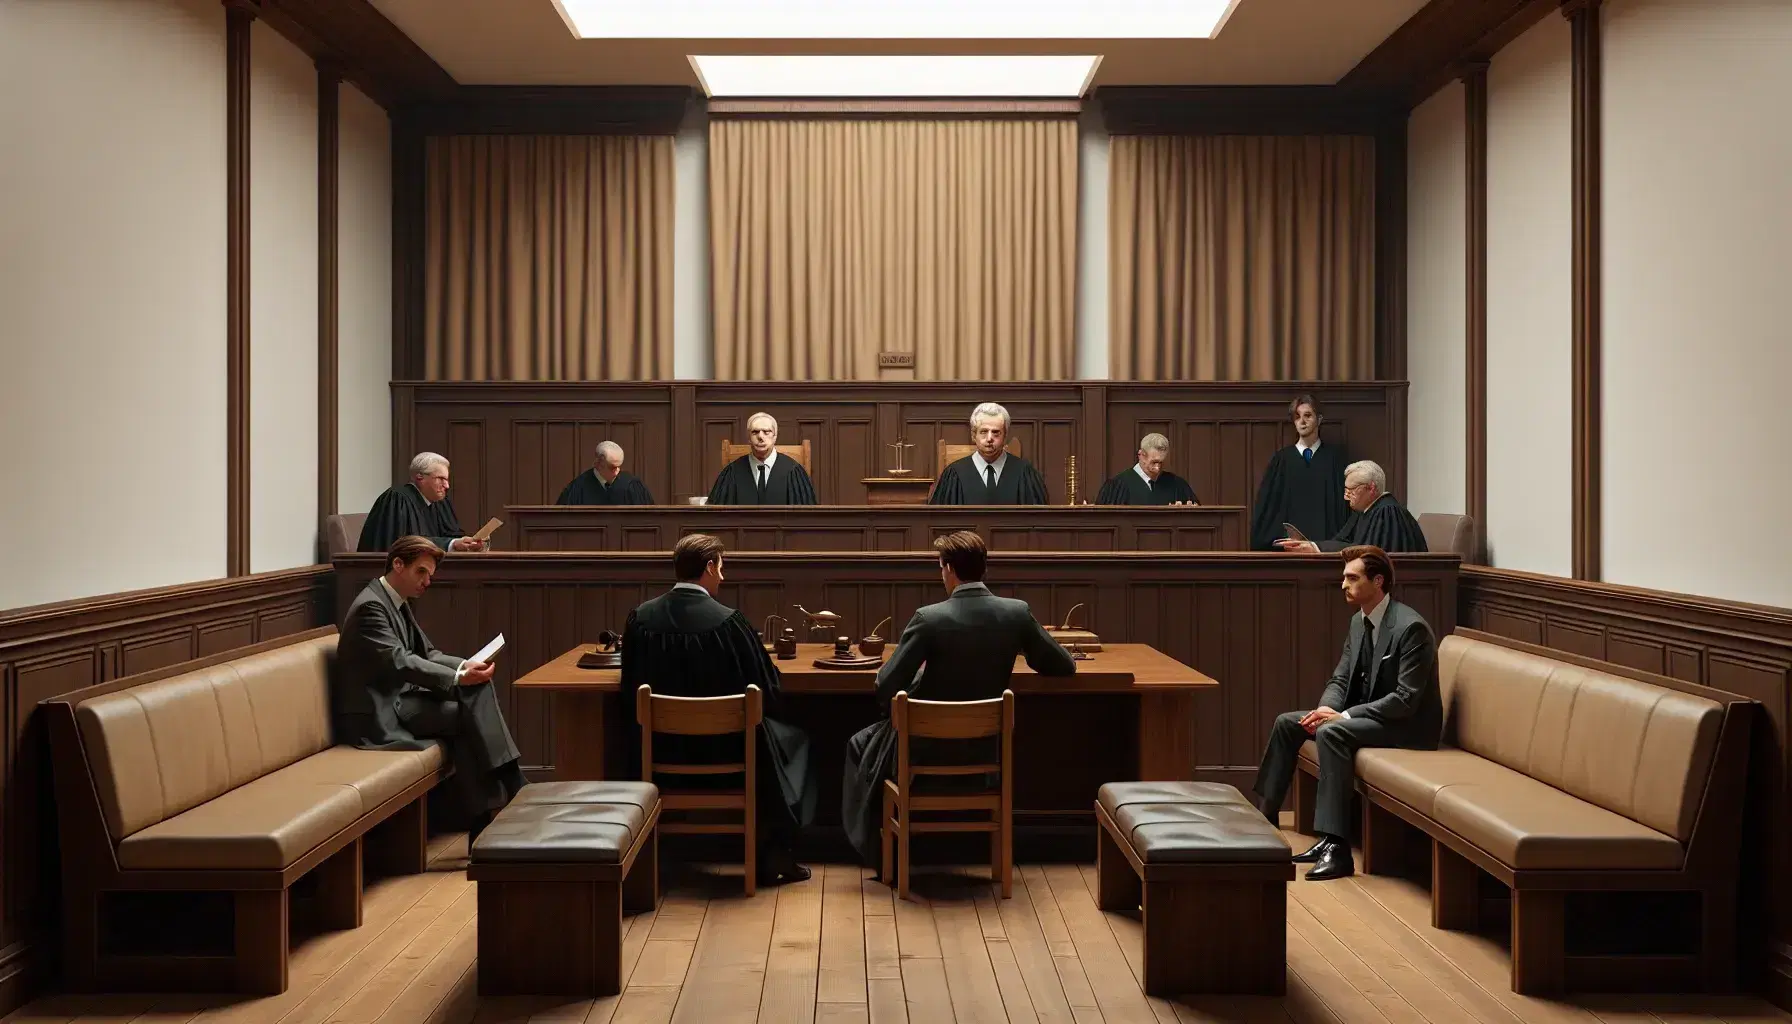 Sala de audiencias de un tribunal penal con jueces en togas y abogados argumentando, bancos de madera para el público y decoración sobria.